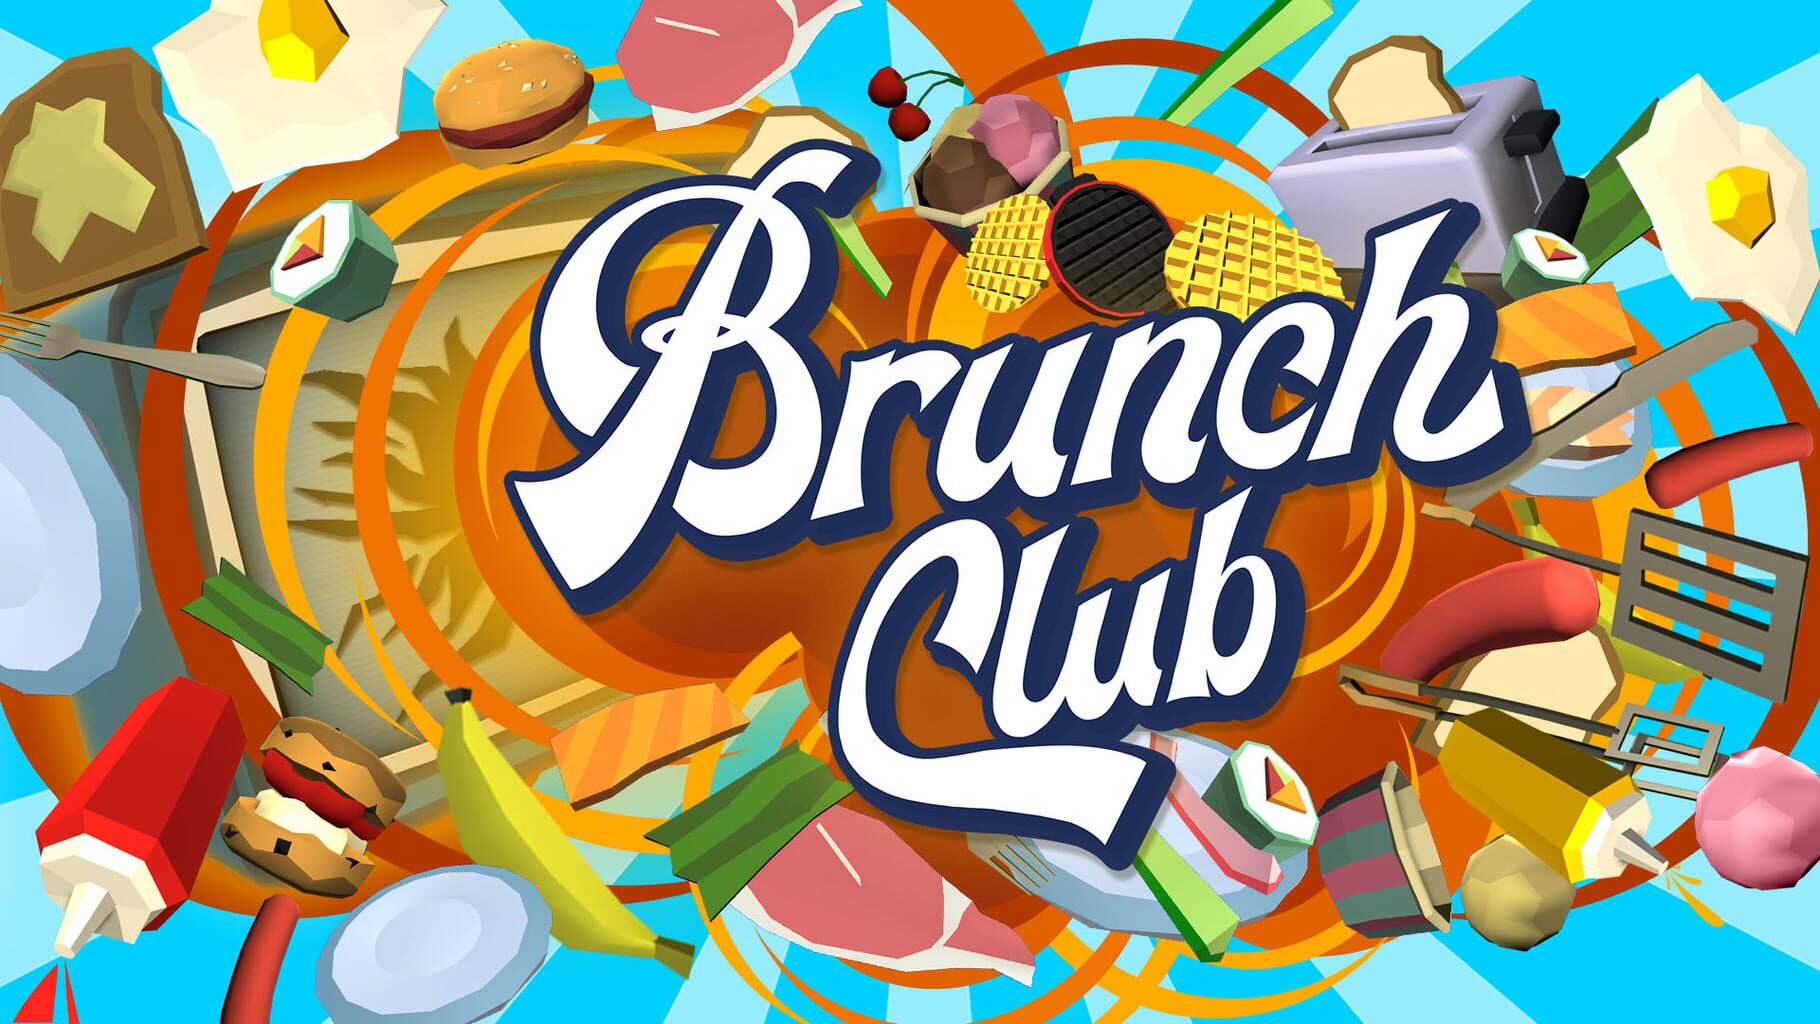 Brunch Club artwork